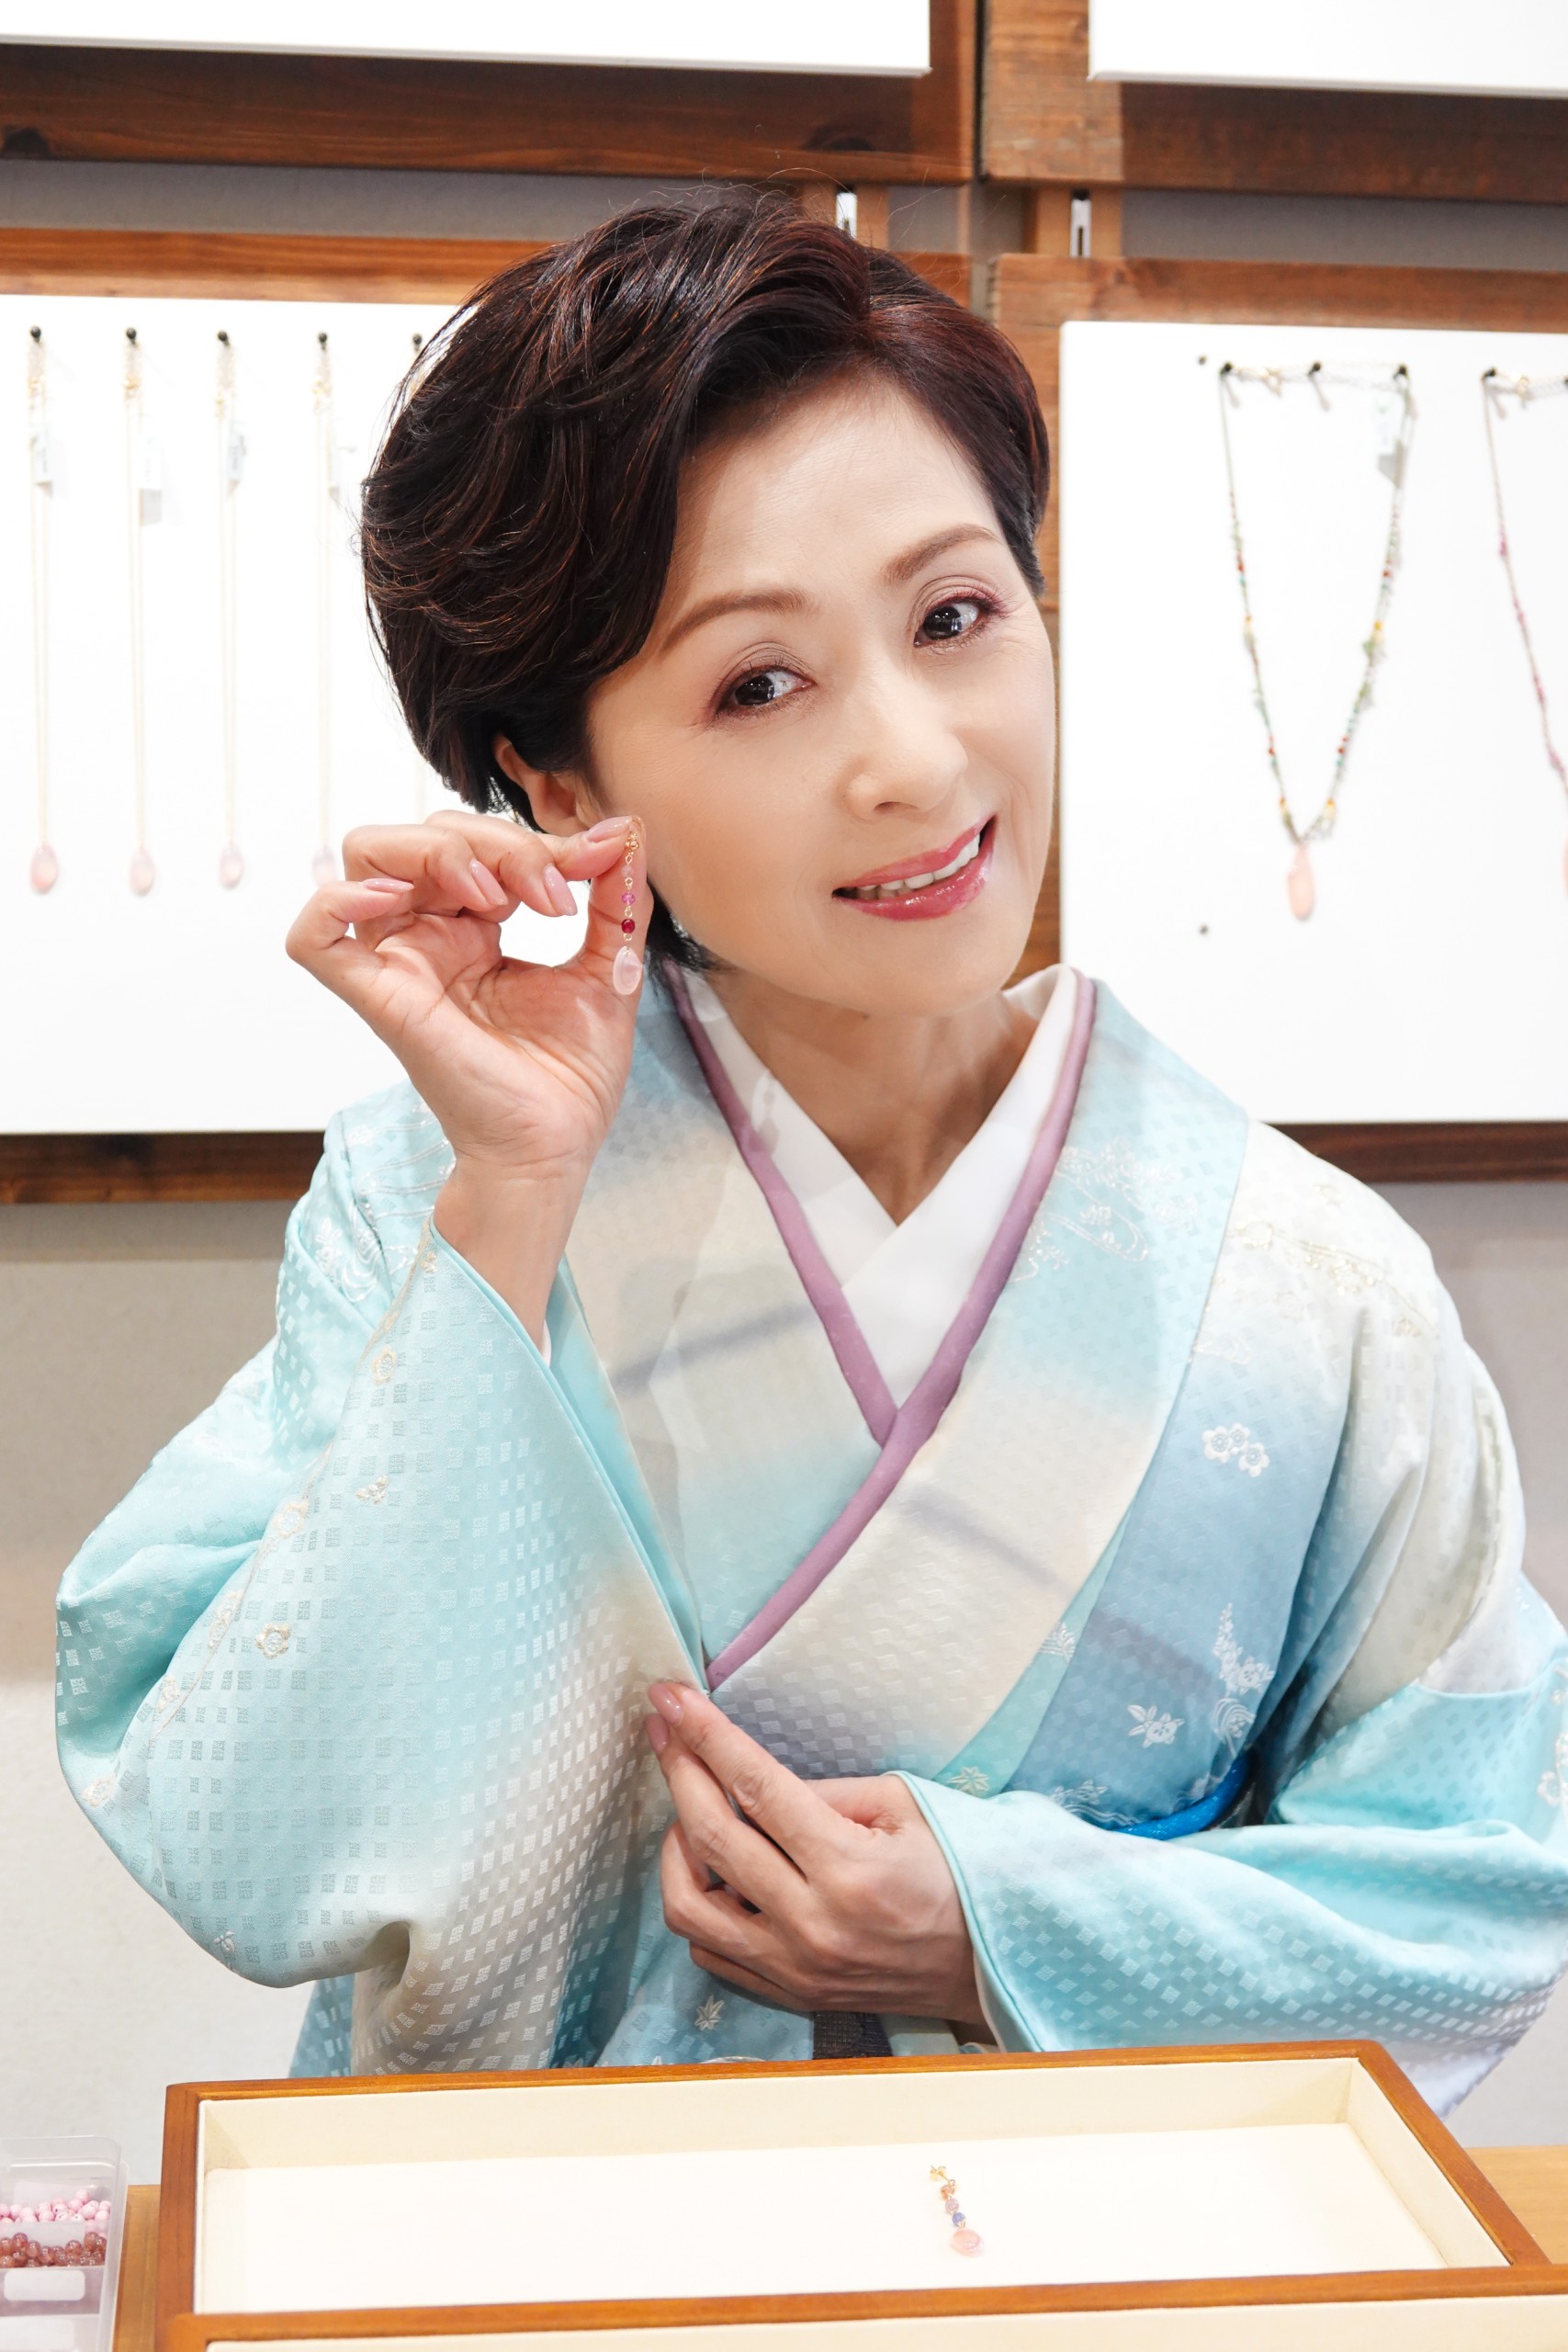 長山洋子が鎌倉でさくら貝のアクセサリーづくりに挑戦。夫婦愛を歌う新曲「今さらねぇ」で幸せを呼び込む - オトカゼ 〜音楽の風〜